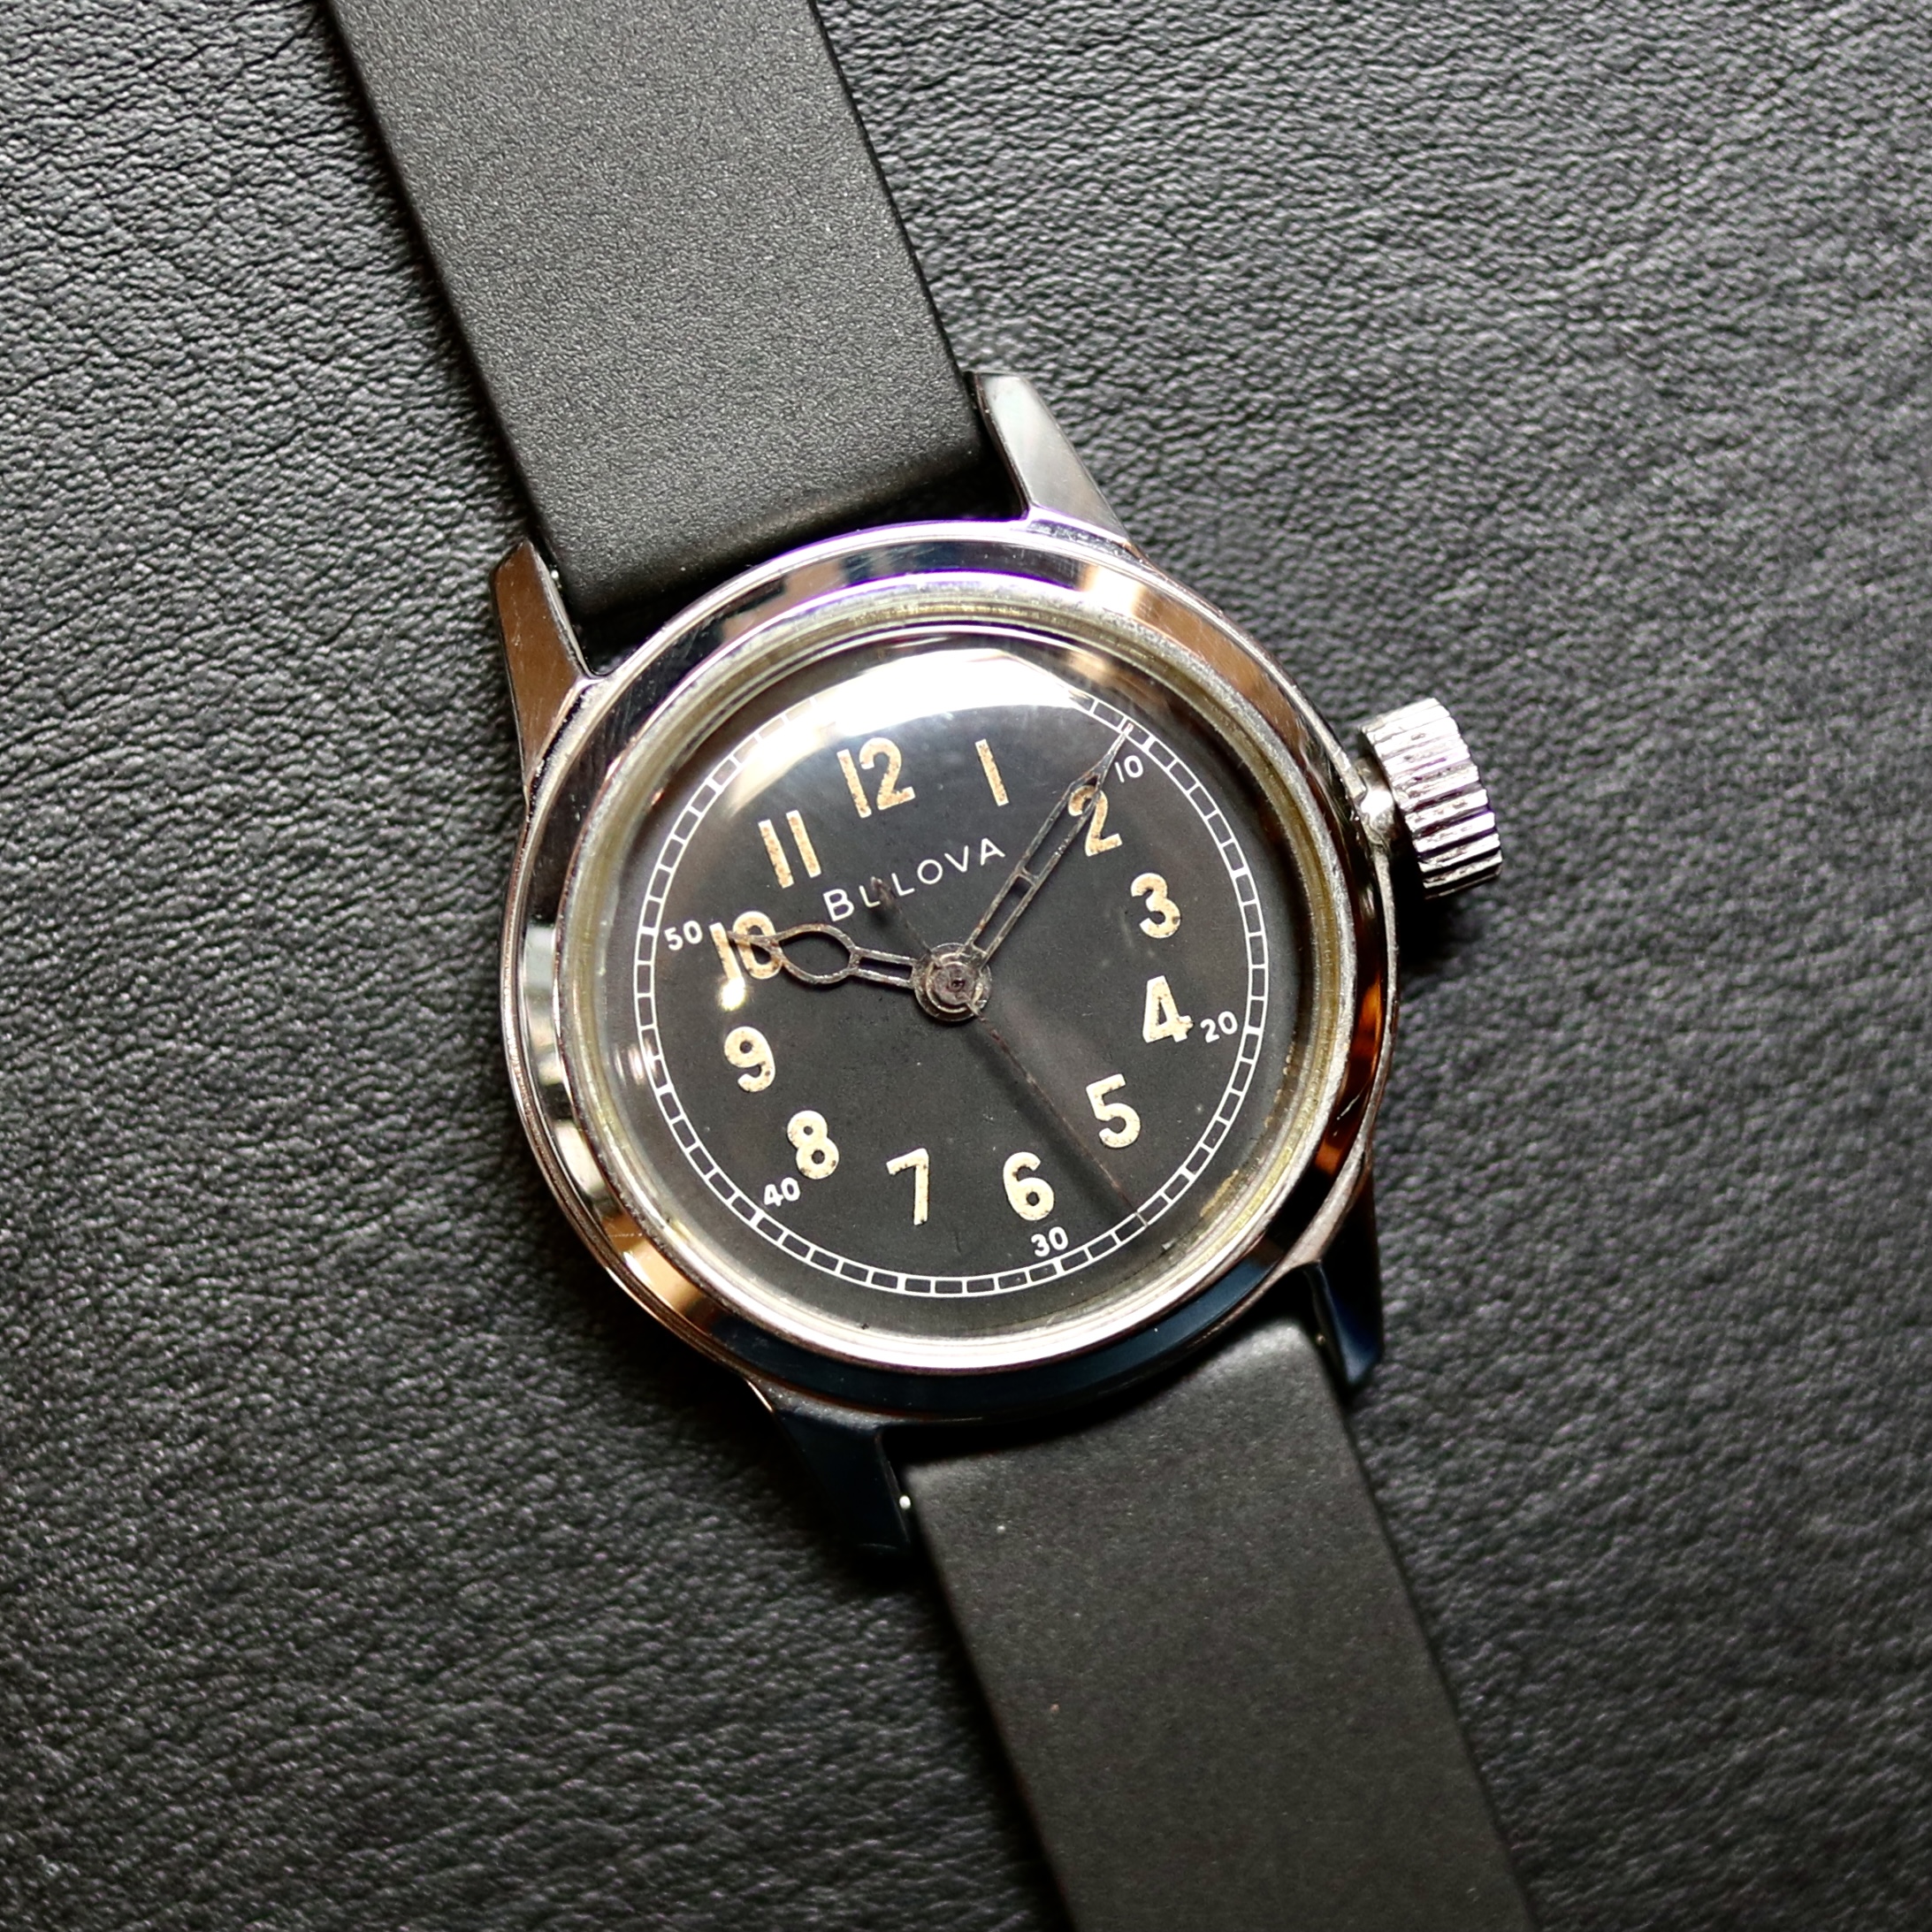 【BULOVA】Vintage military / 腕時計 メンズ おしゃれ ブランド 人気 30代 40代 50代 60代 おすすめ プレゼント画像